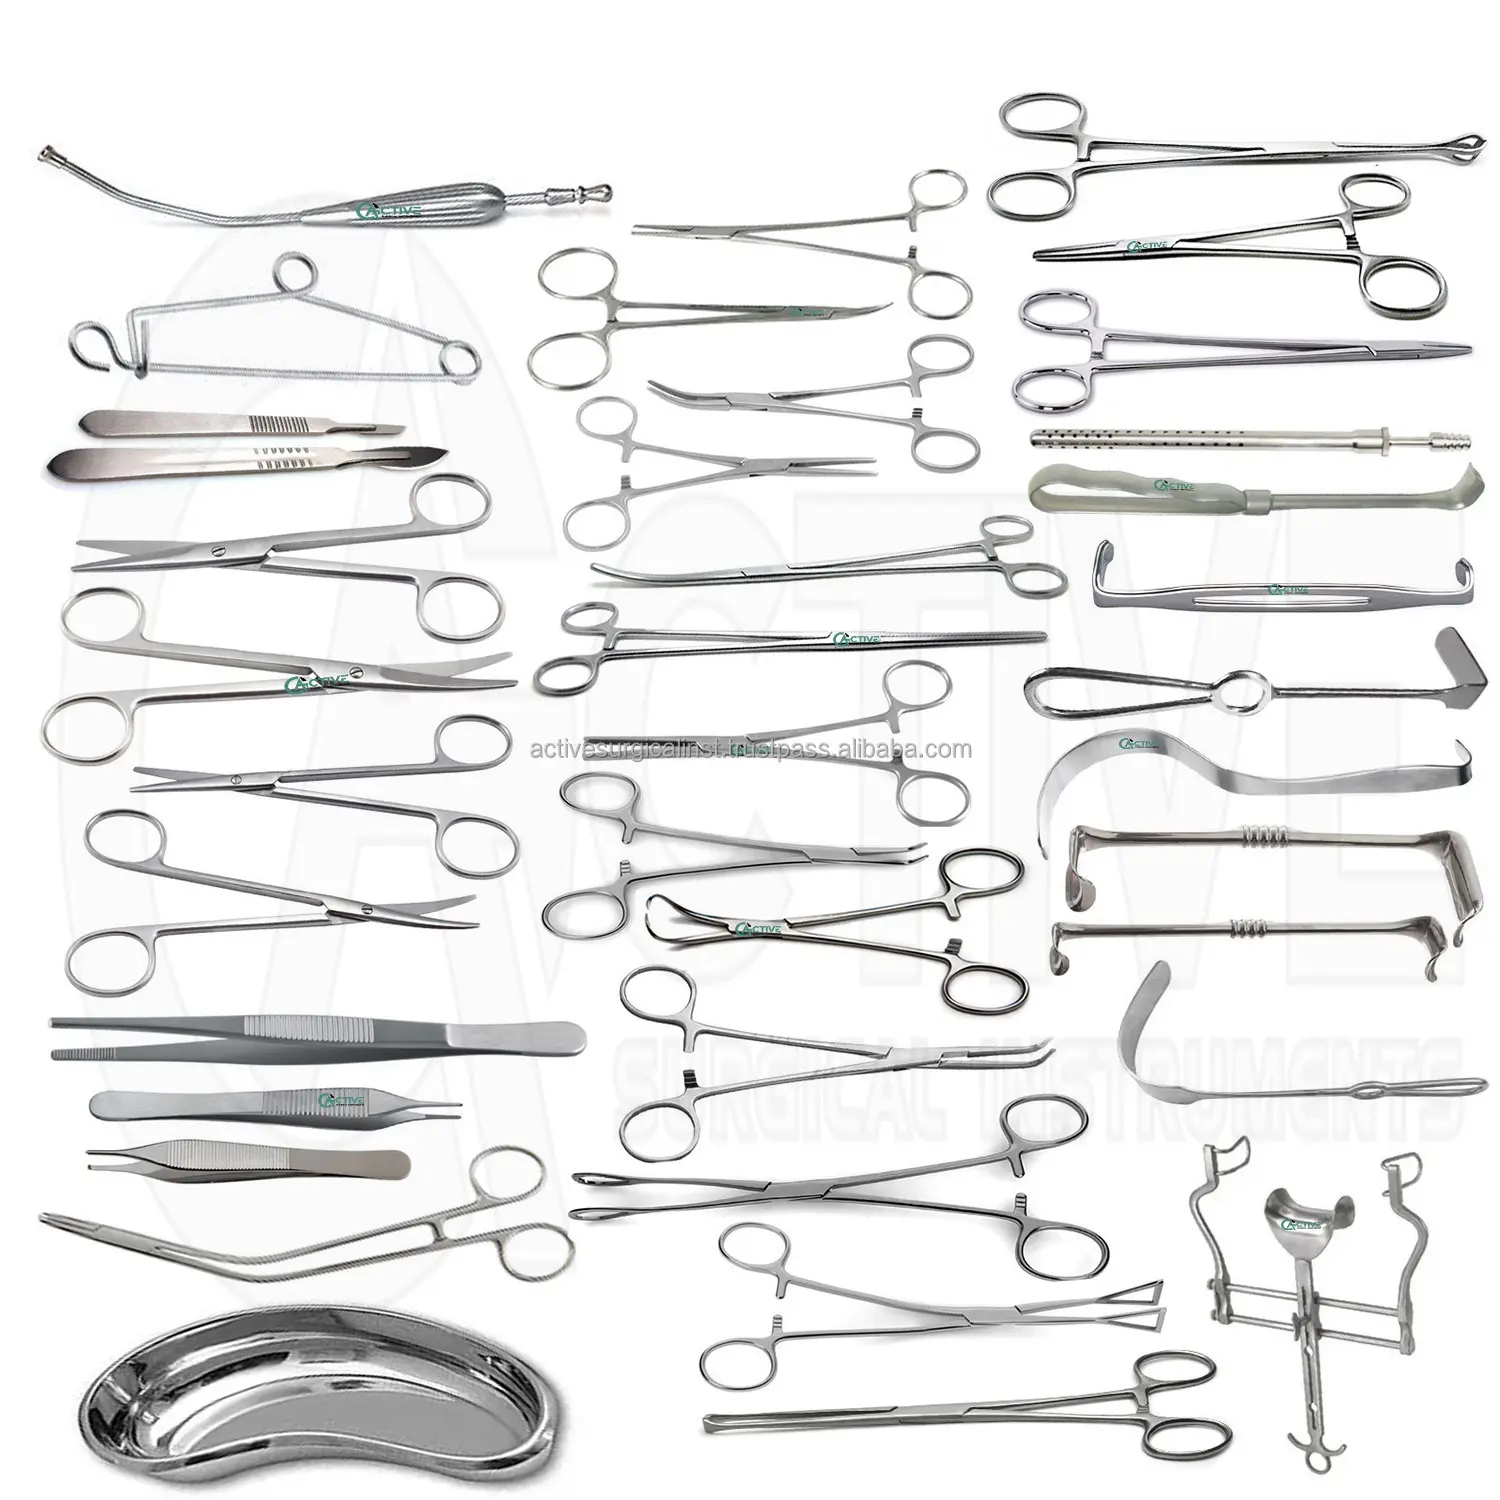 En kaliteli cerrahi alet seti 48 adet Set genel cerrahi tıbbi cihazlar yüksek kaliteli malzeme temel cerrahi seti